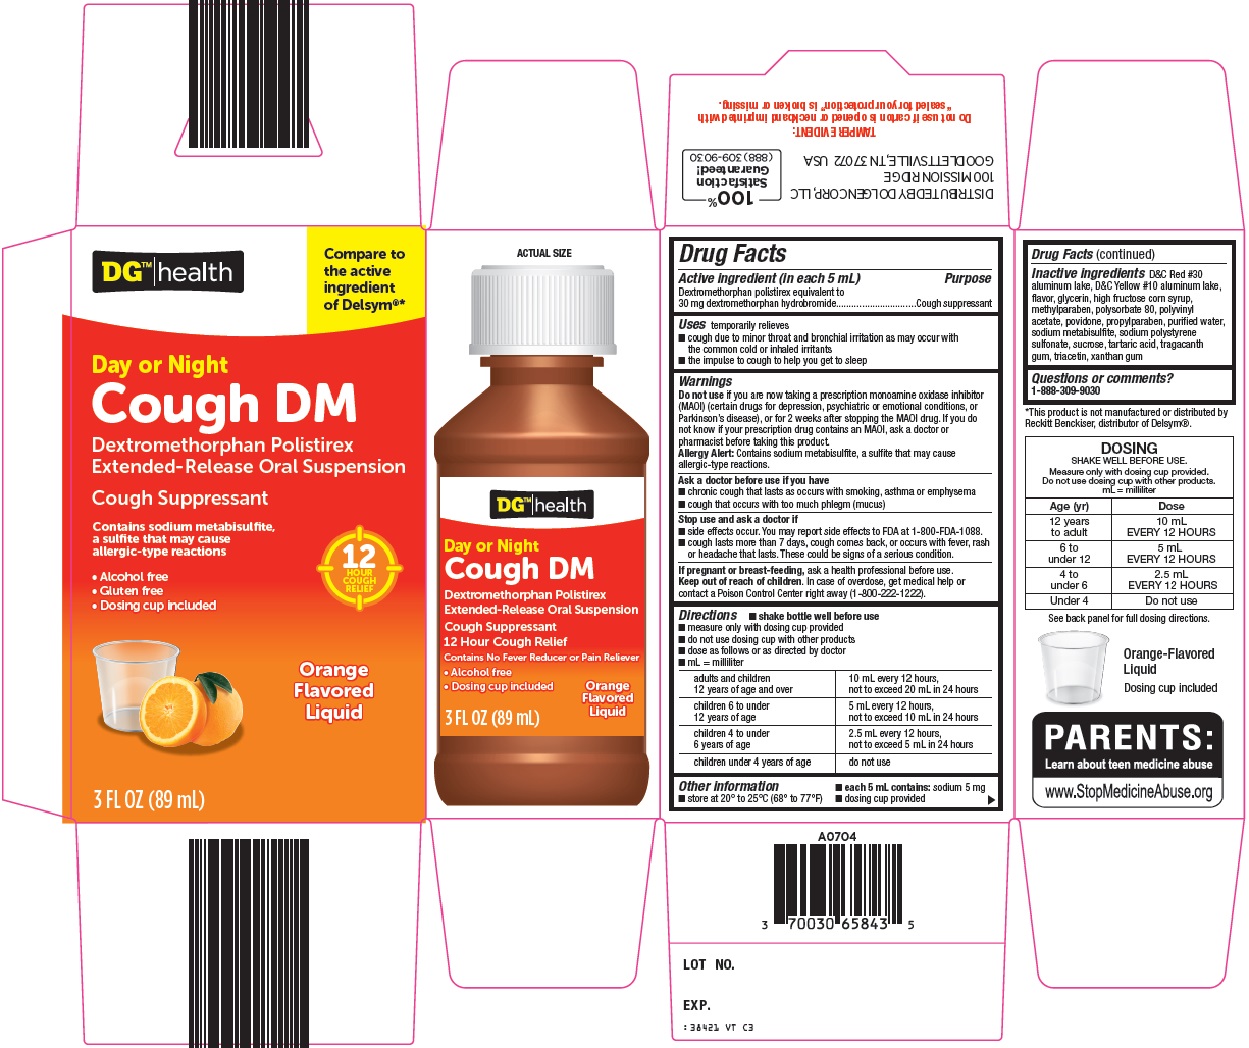 DG Health Cough DM image